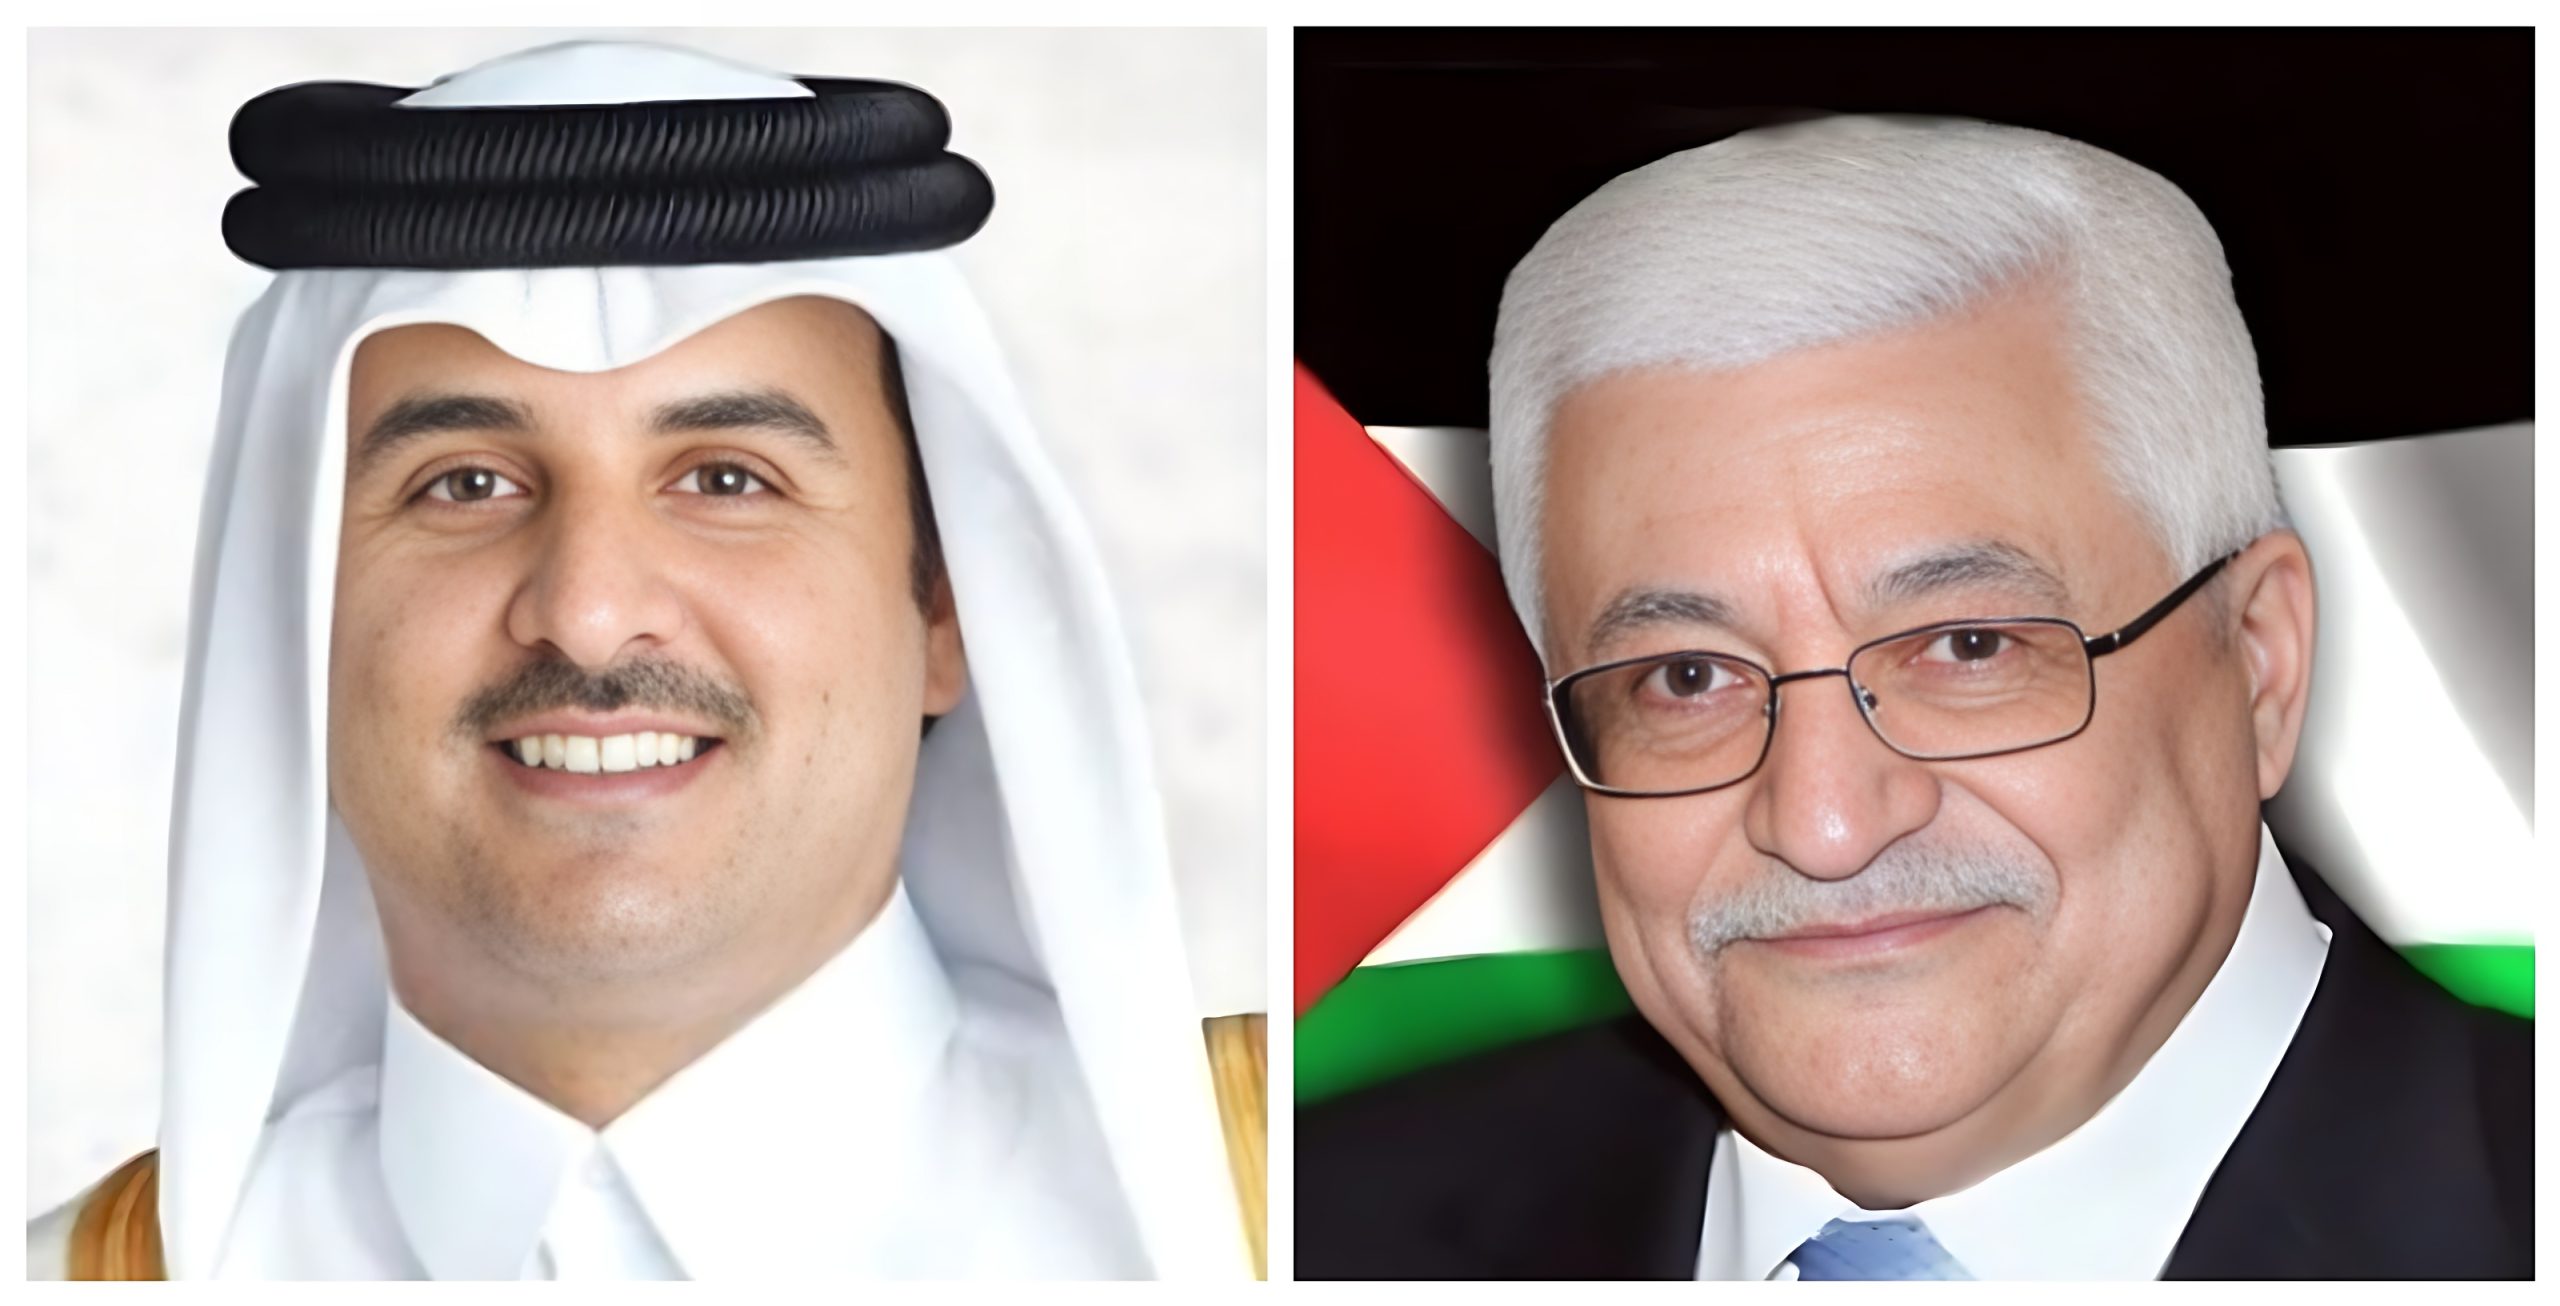 الرئيس عباس يتحدث مع أمير قطر حول آخر التطورات السياسية في الأرض الفلسطينية المحتلة.